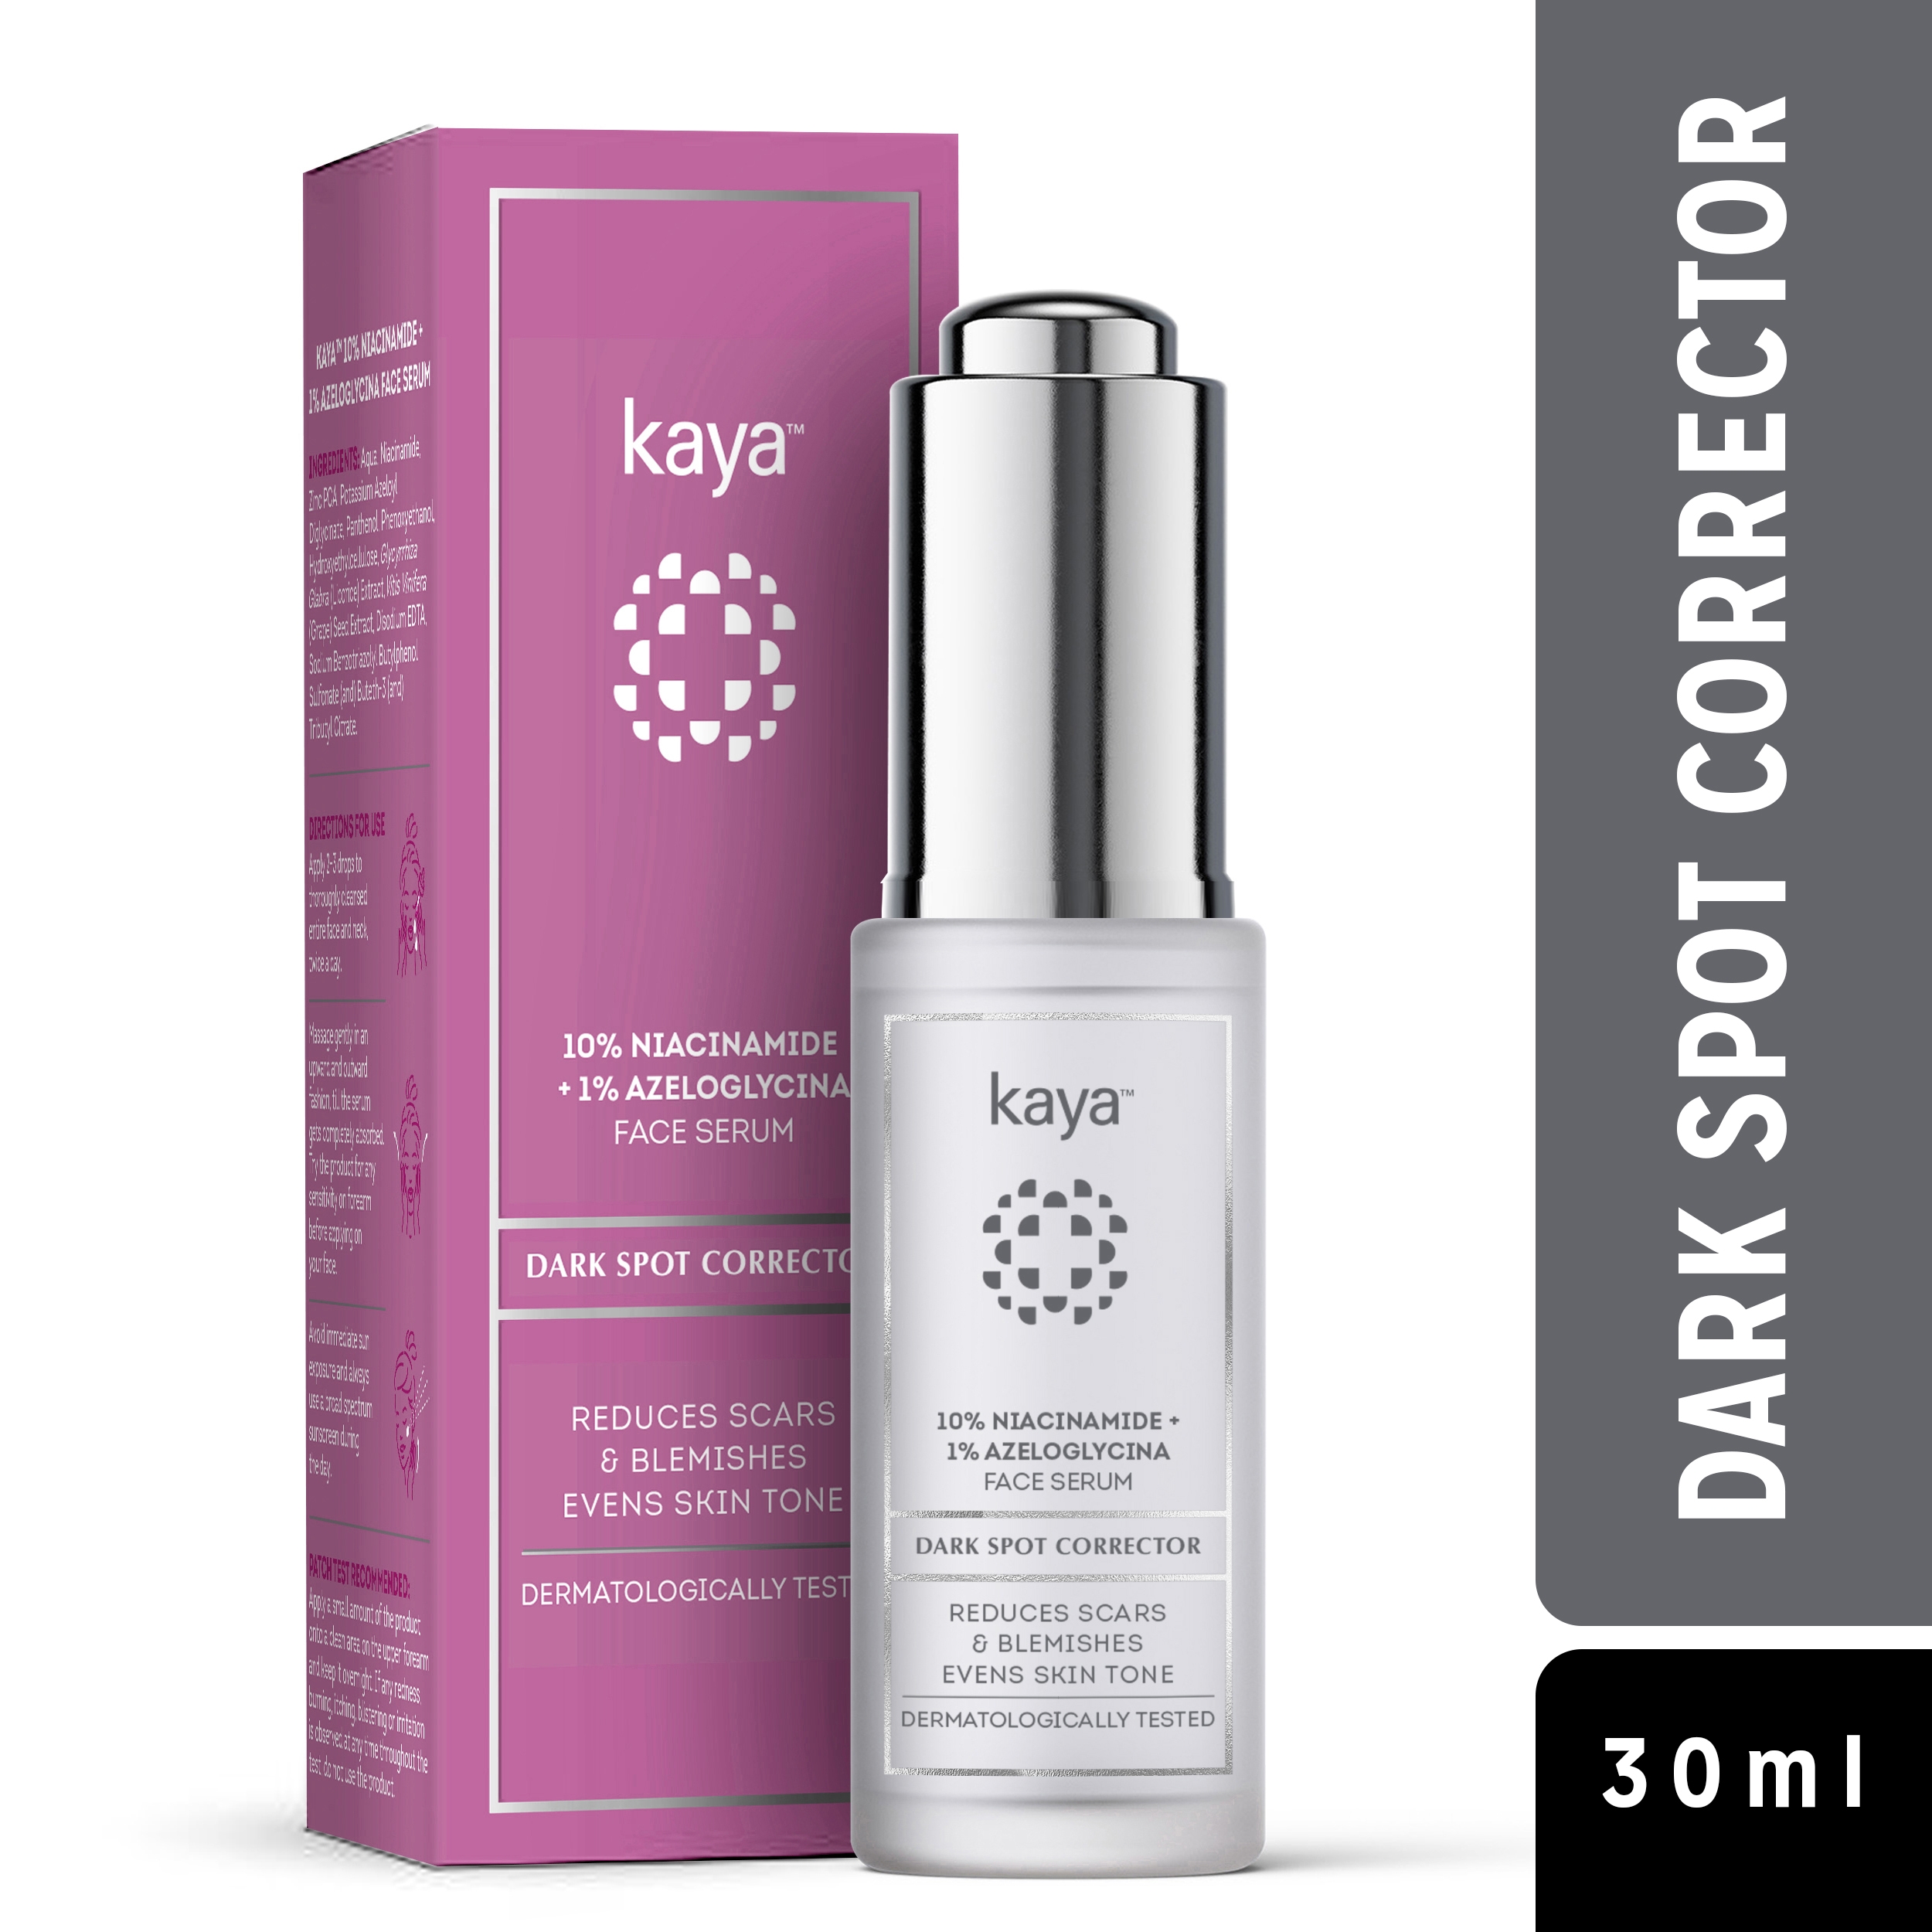 Kaya | kaya Kaya 10% Niacinamide + 1% Azeloglycina Face Serum
Dark Spot Corrector 0